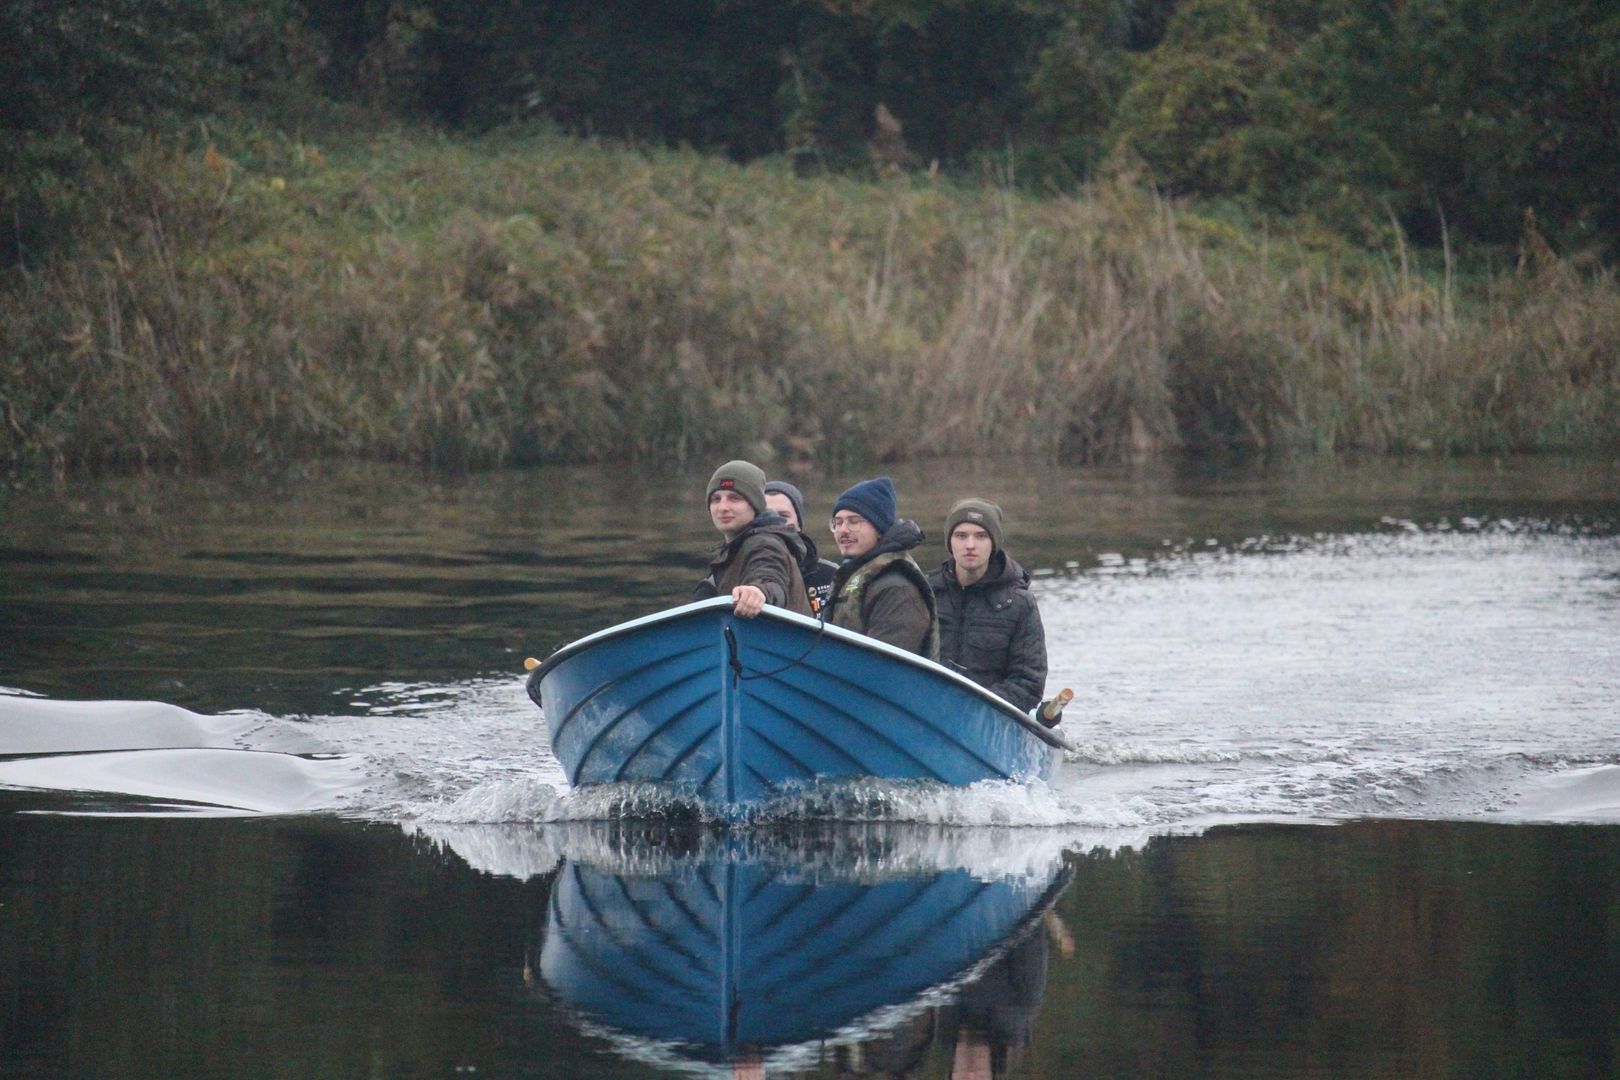 Studencji płyną łodzią przez jezioro.